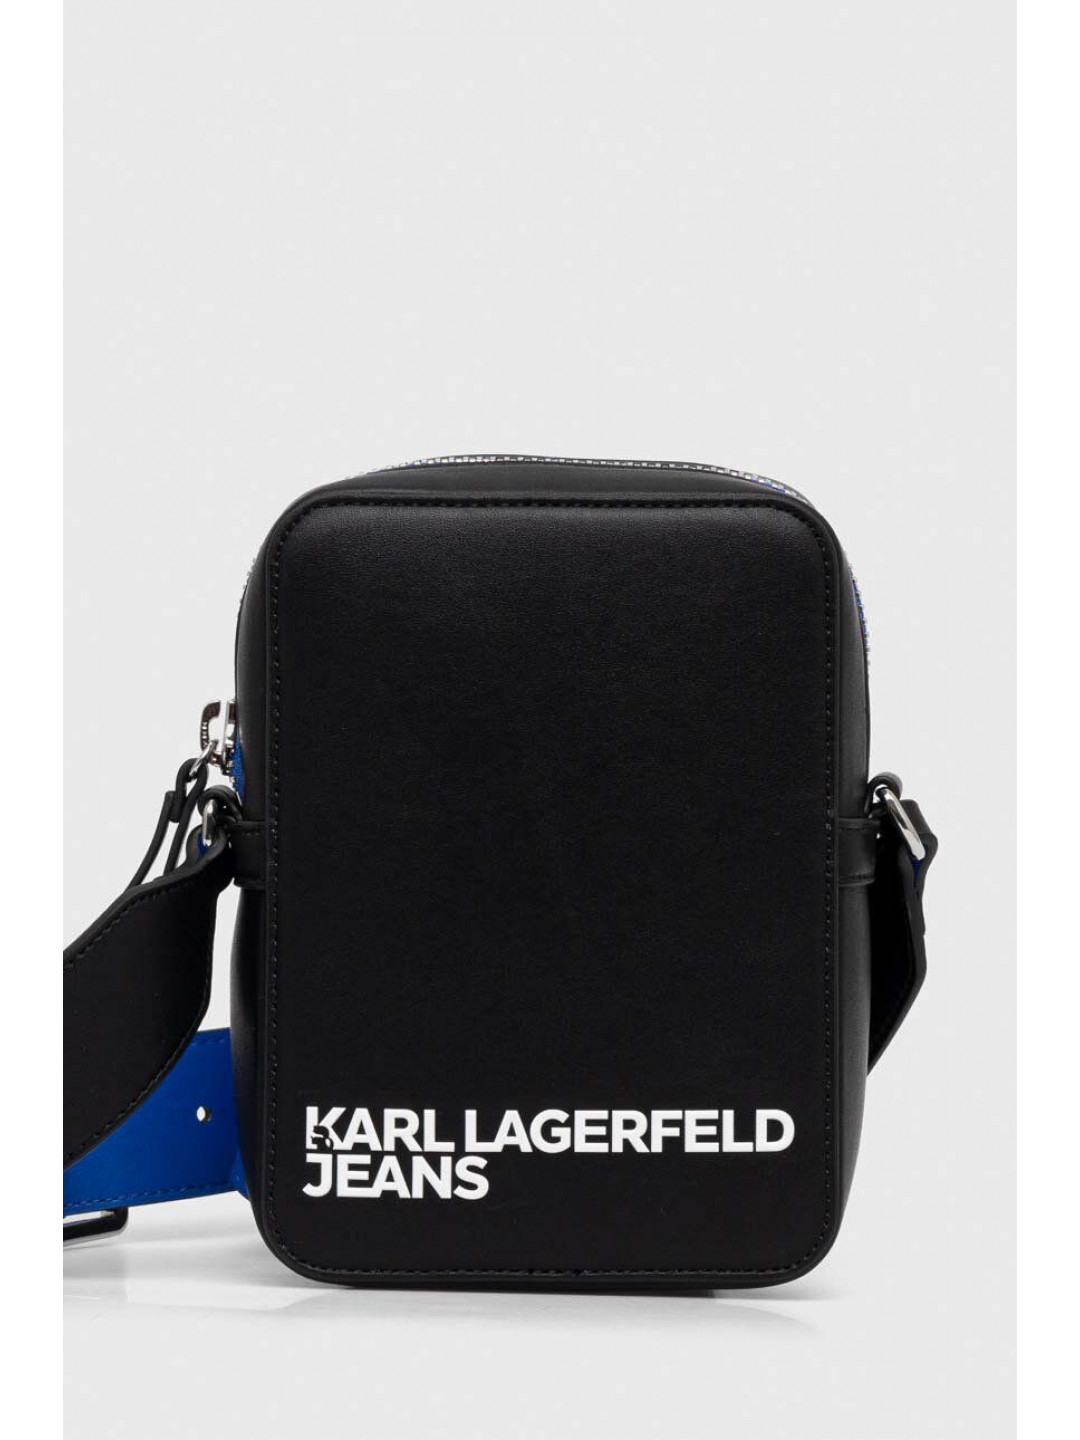 Batoh Karl Lagerfeld Jeans pánský černá barva velký hladký